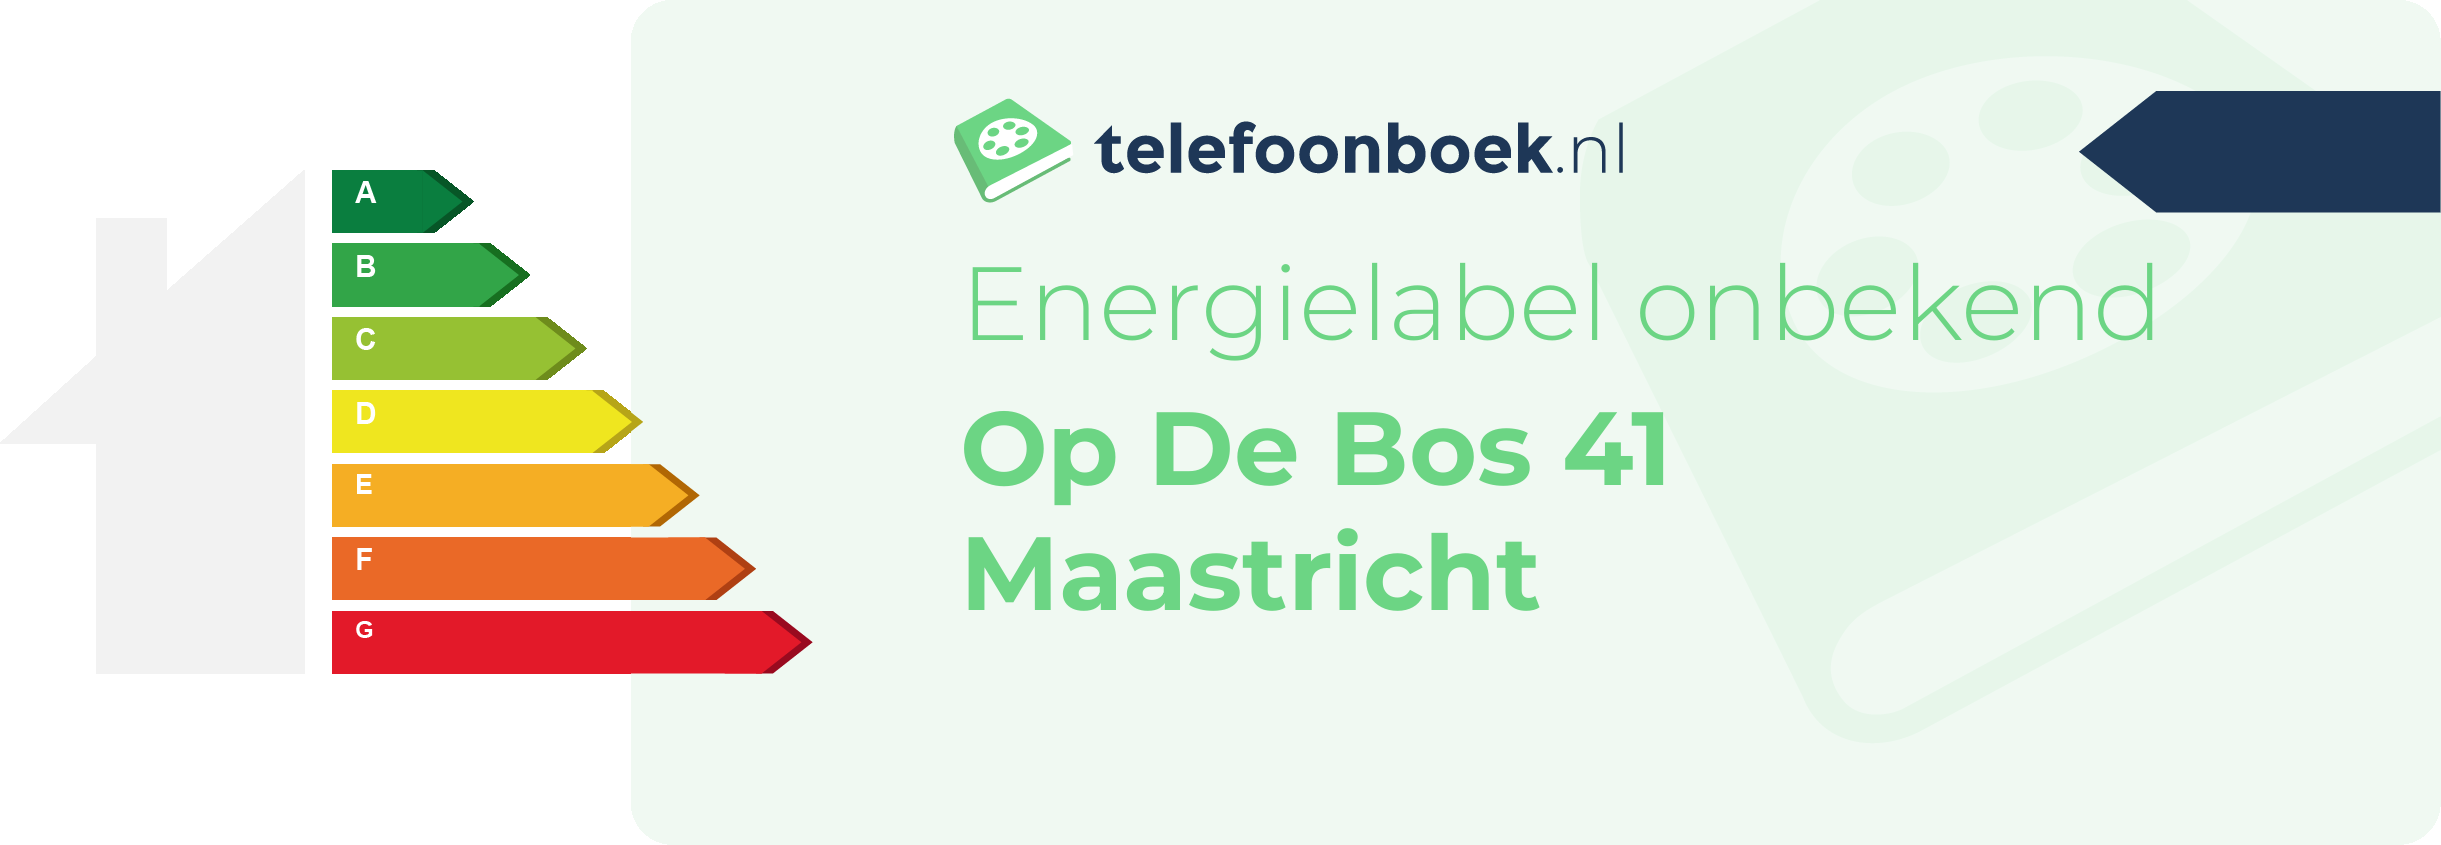 Energielabel Op De Bos 41 Maastricht